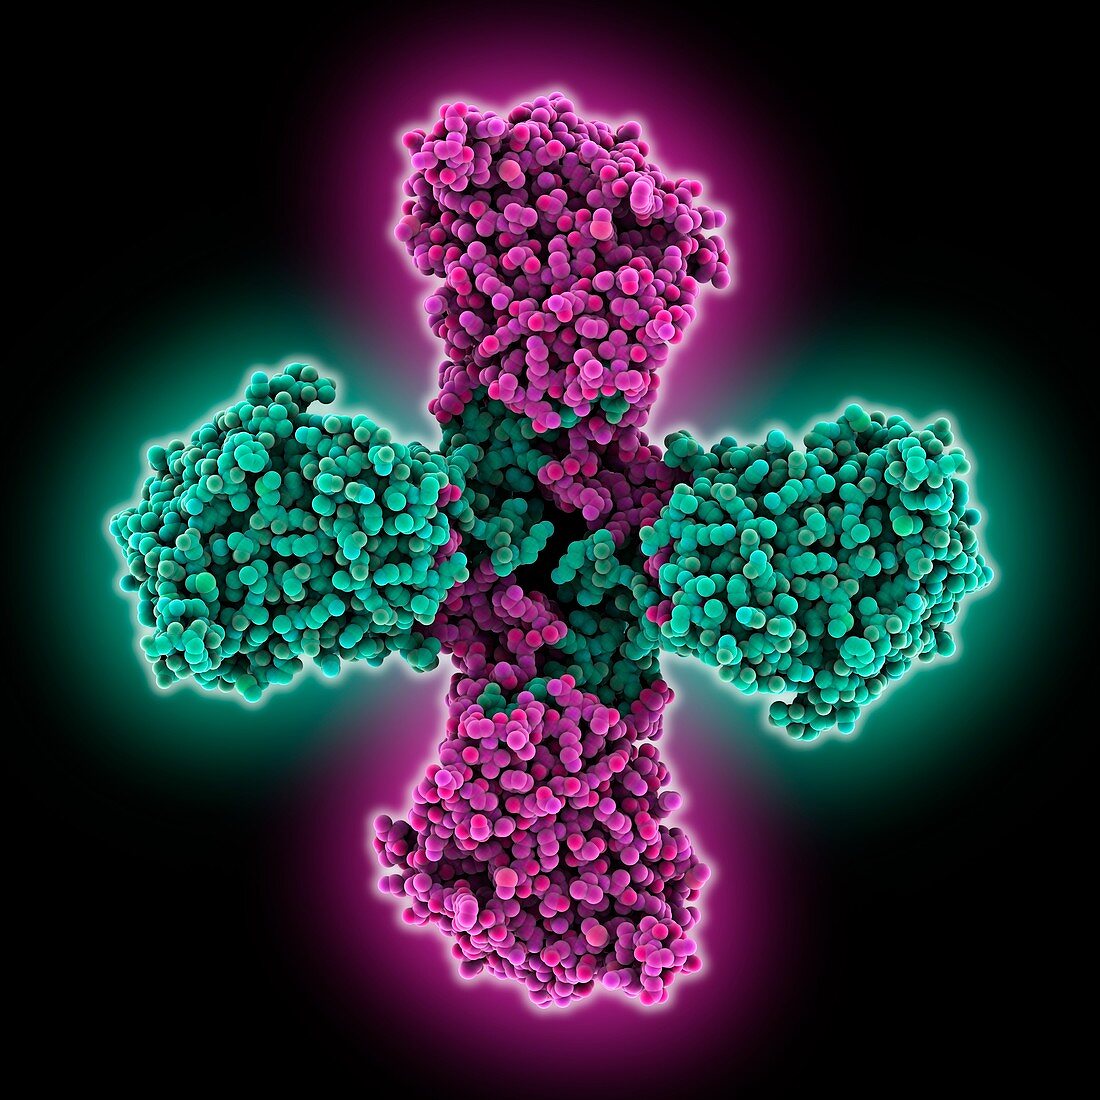 Influenza B virus nucleoprotein